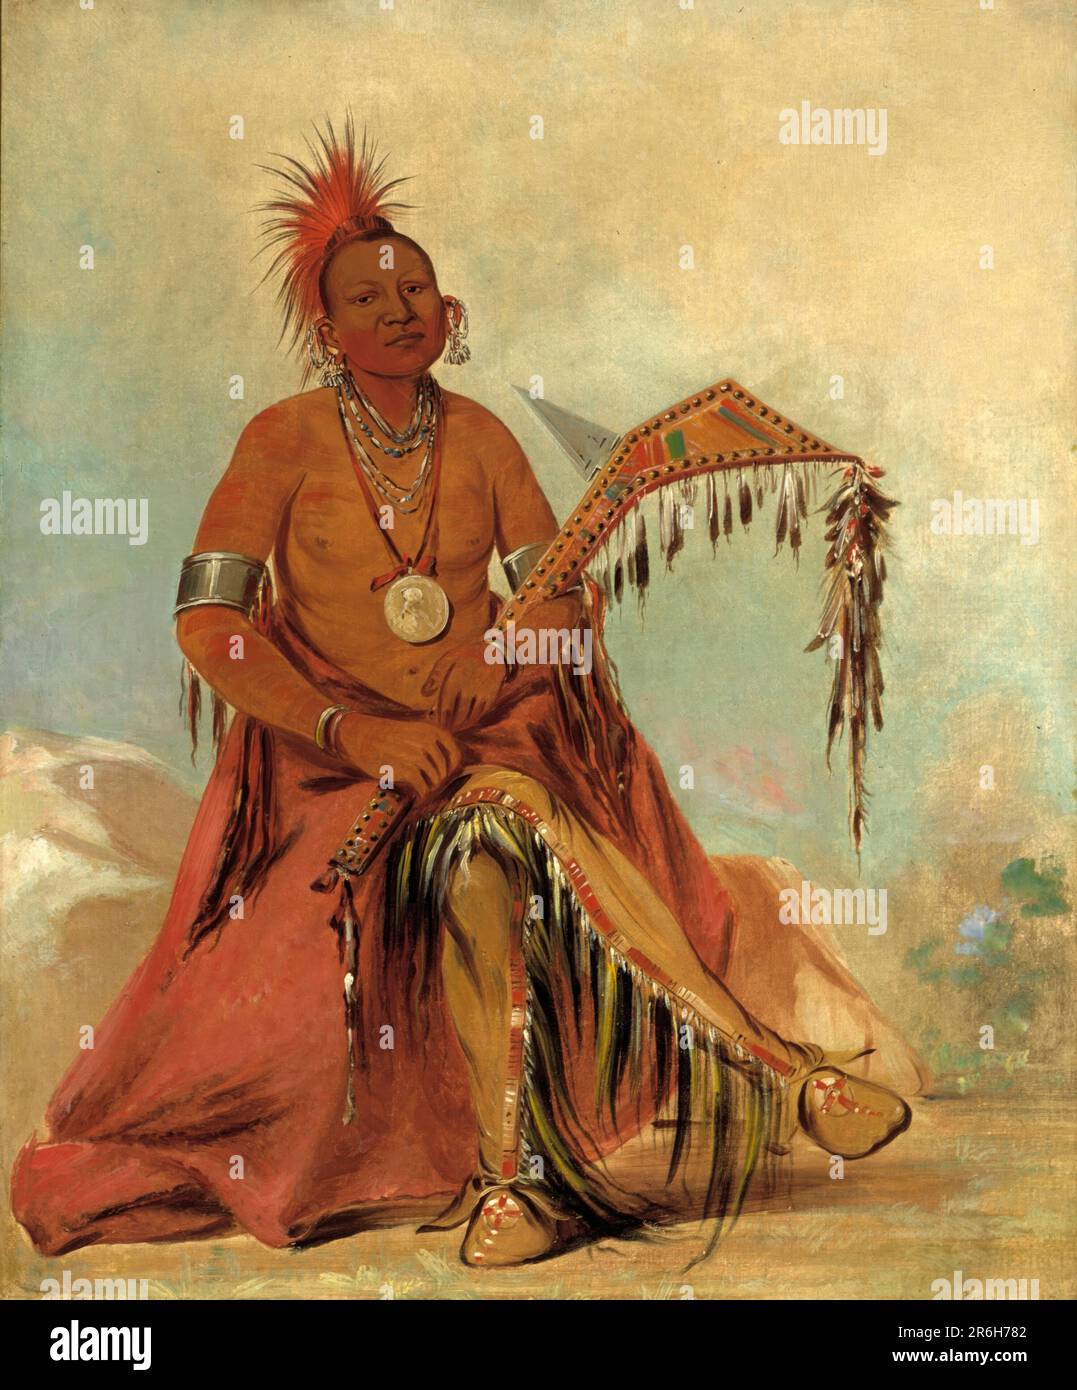 Cler-mónt, erster Häuptling des Stammes. Öl auf Segeltuch. Datum: 1834. Museum: Smithsonian American Art Museum. Clermont. Stockfoto